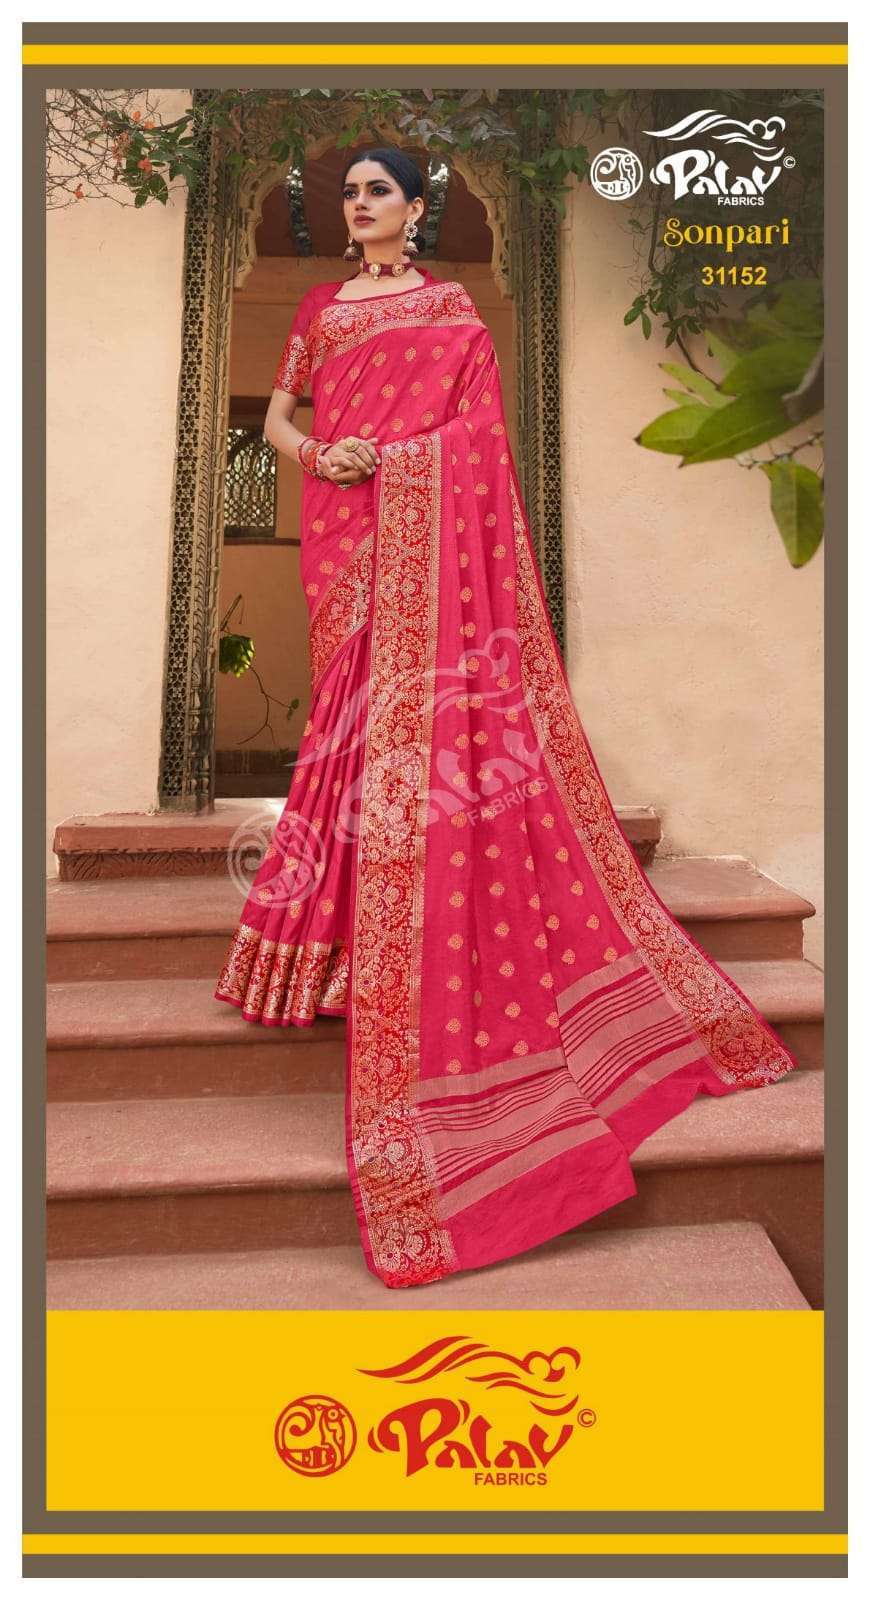 Palav Fabrics Sonpari Silk Traditional Sarees Collection 01